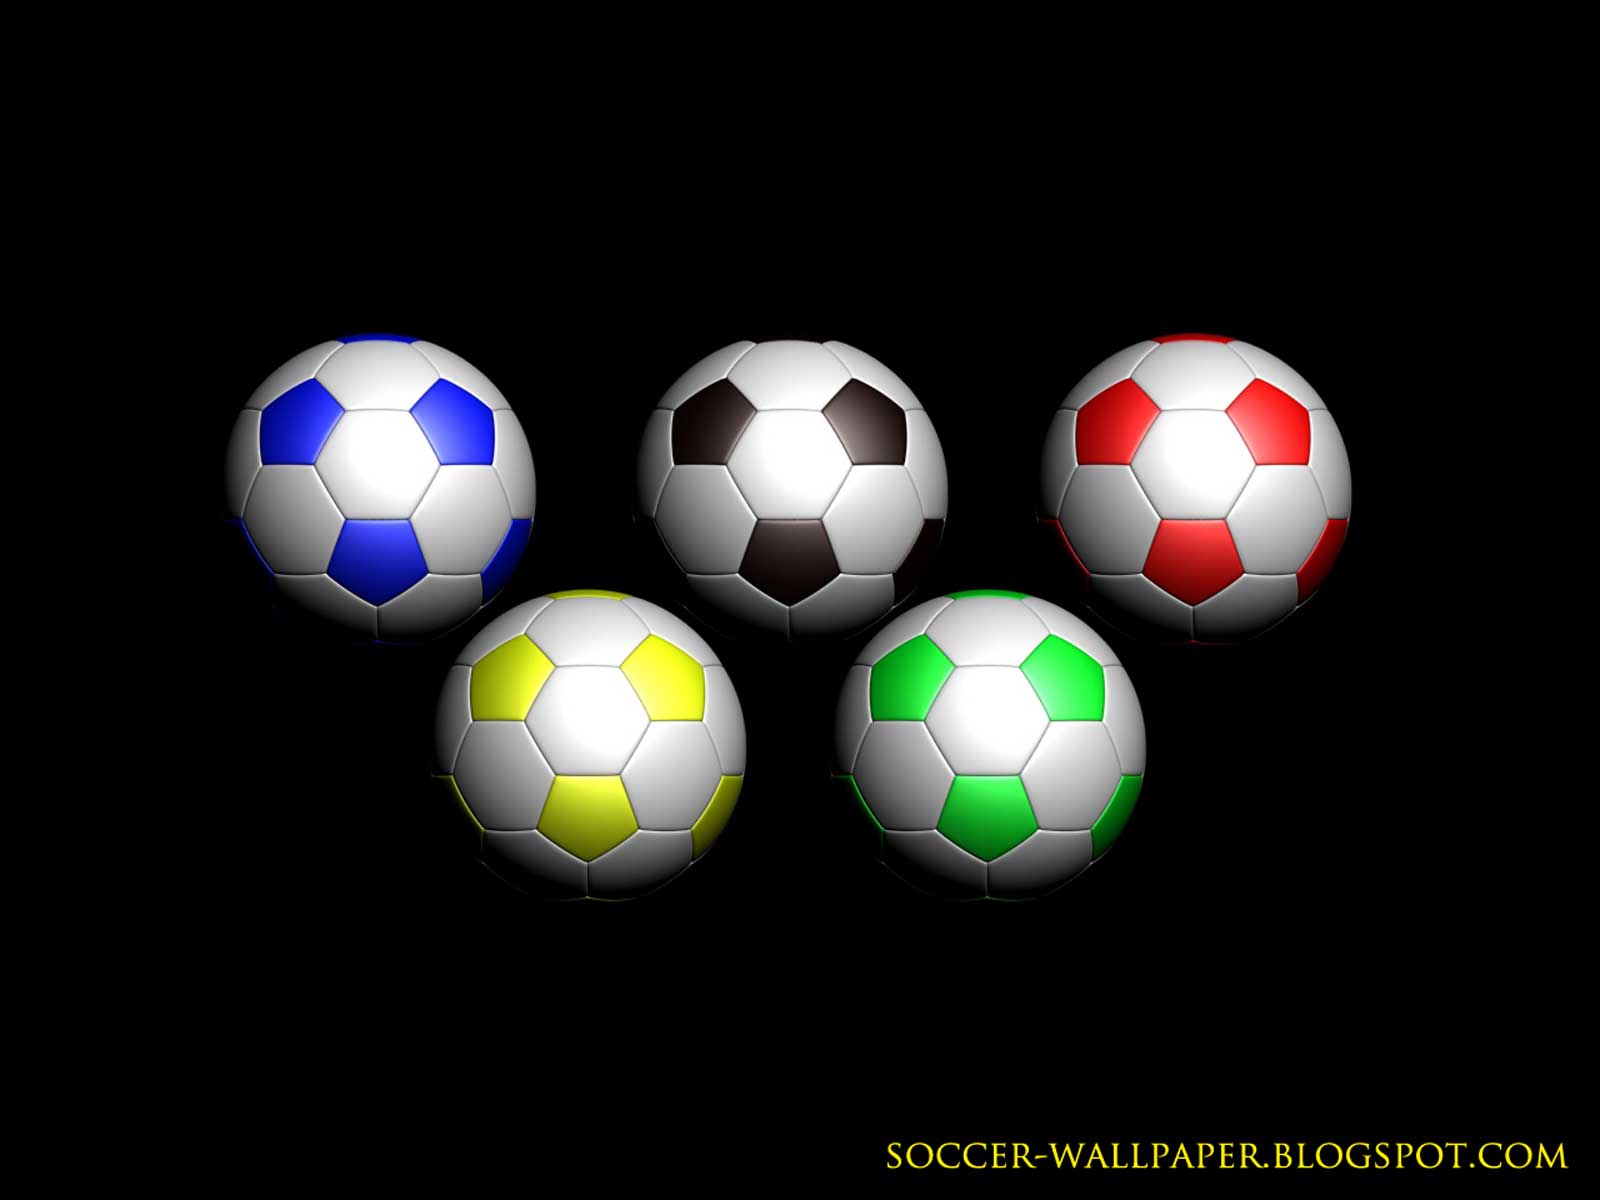 http://3.bp.blogspot.com/-CFTt1DpoDqg/URKRVct4-7I/AAAAAAAACBU/Eb7f4dus3s0/s1600/Soccerball_wallpapers.jpg